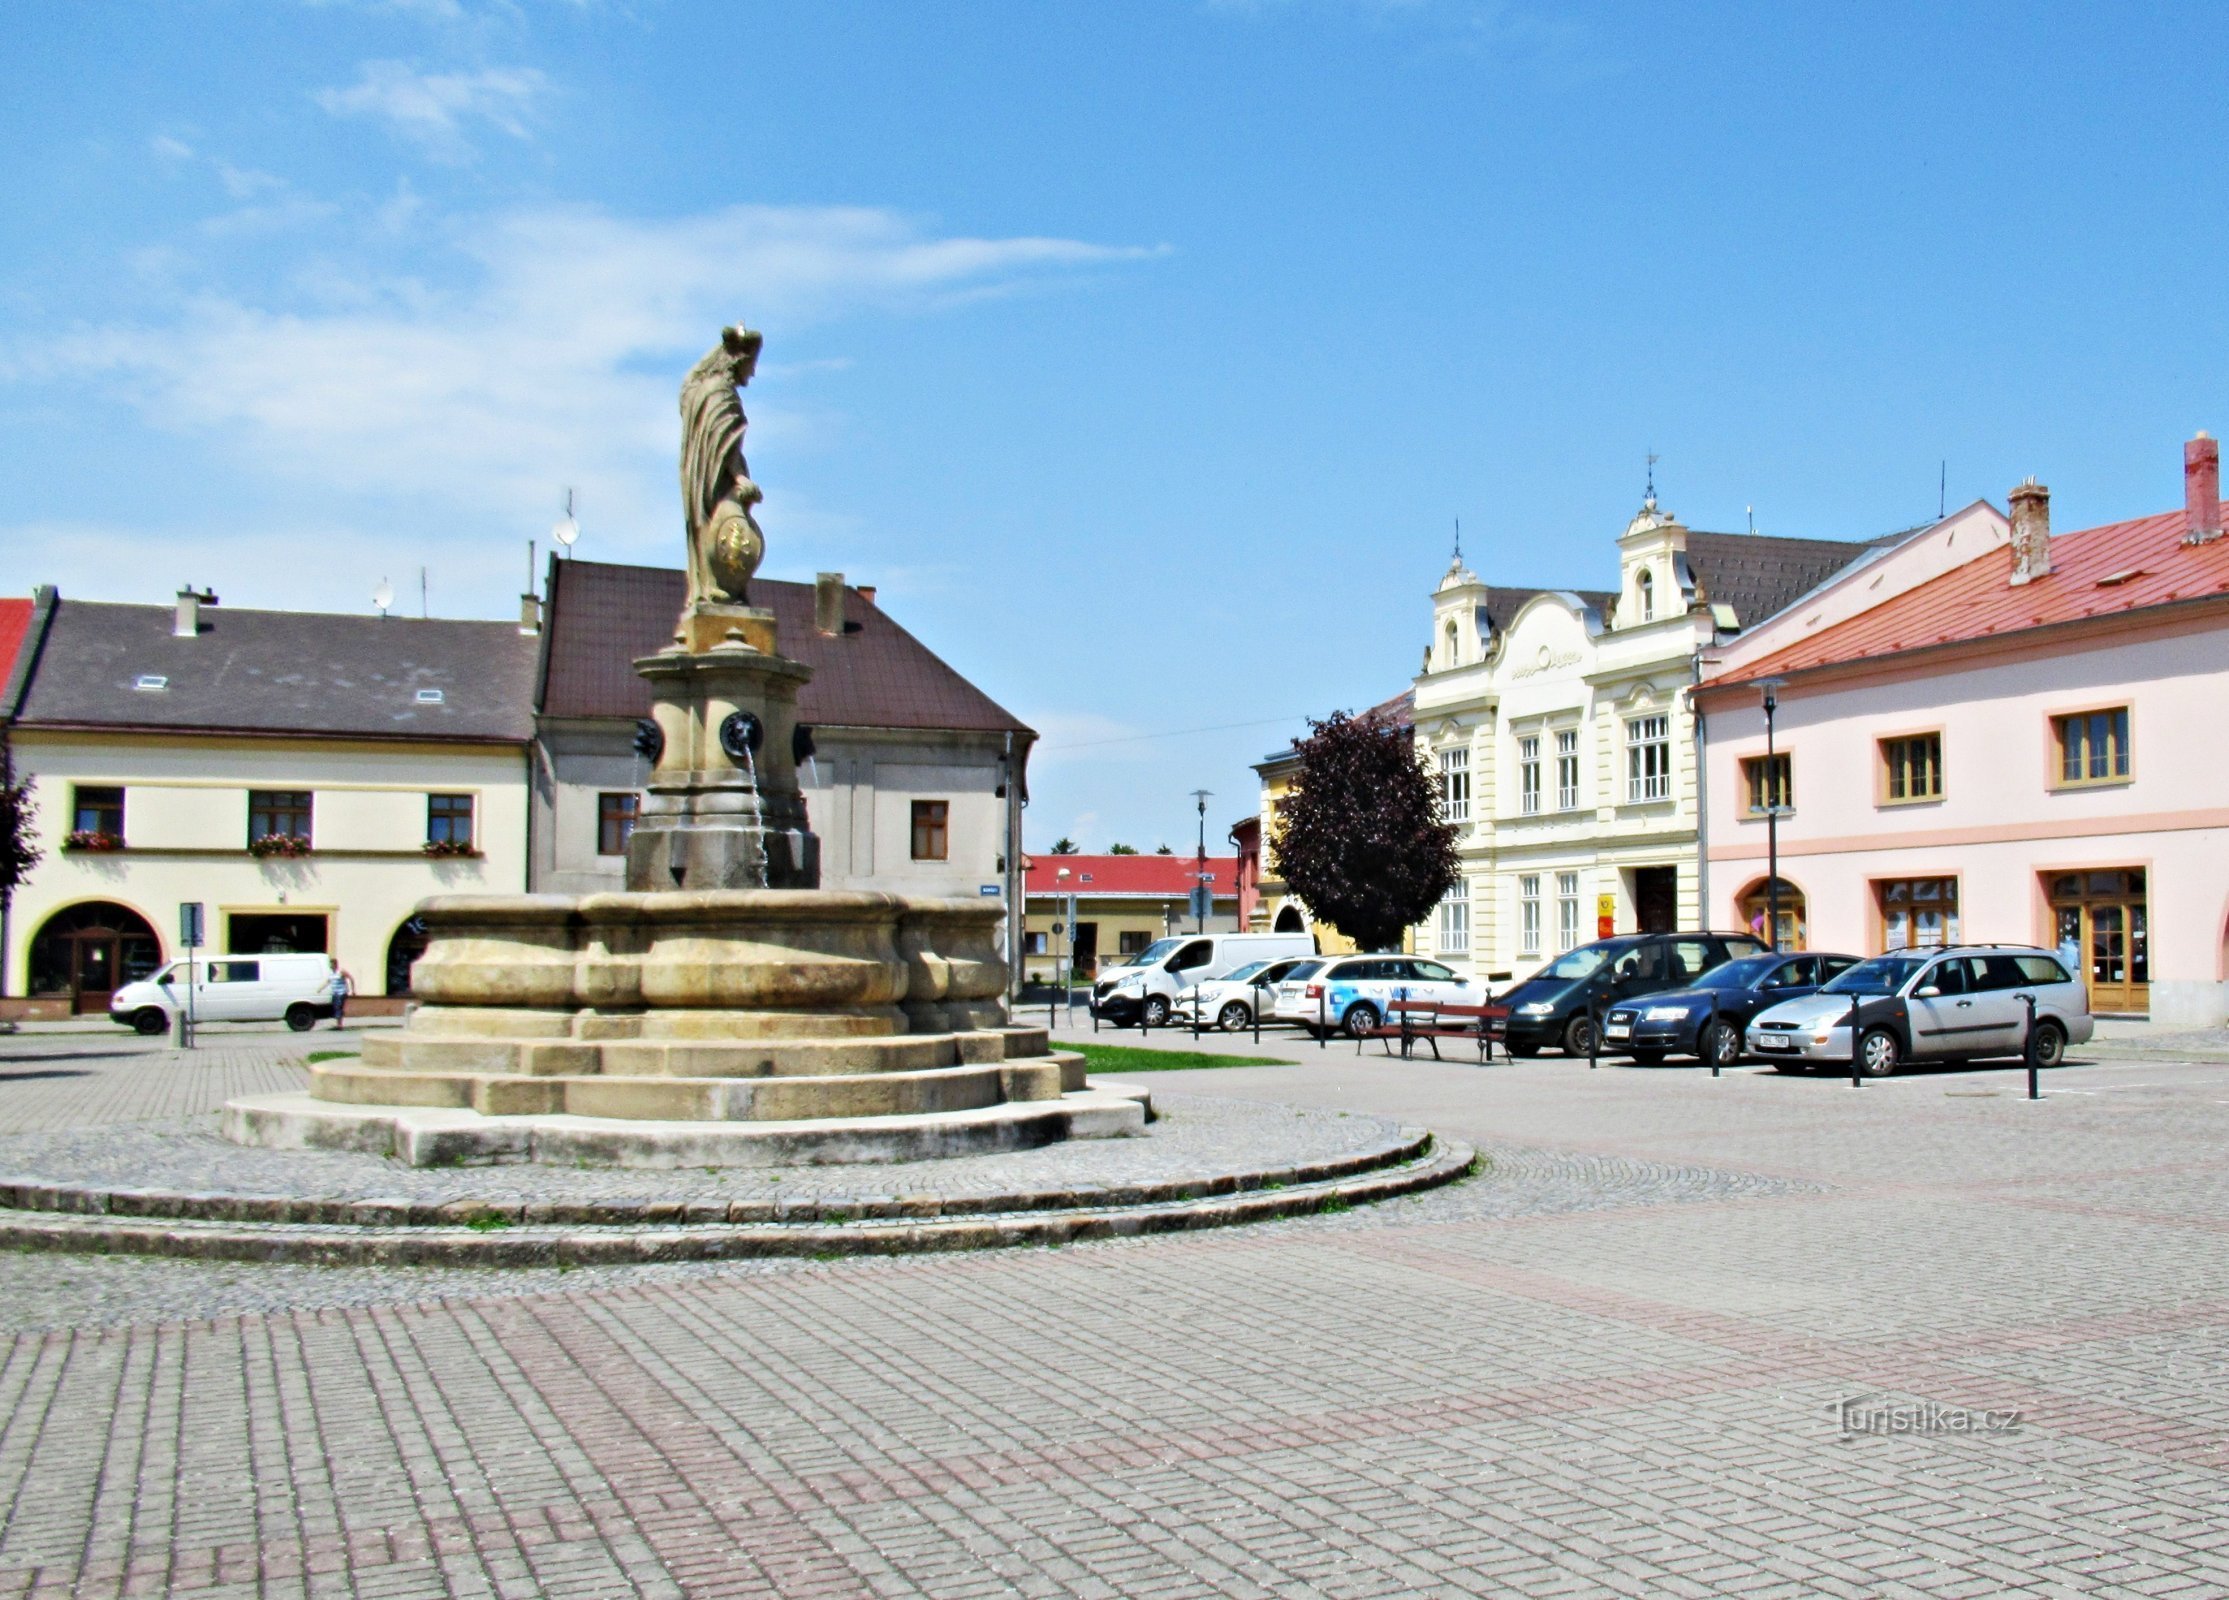 Historisk springvand på pladsen i Tovačov